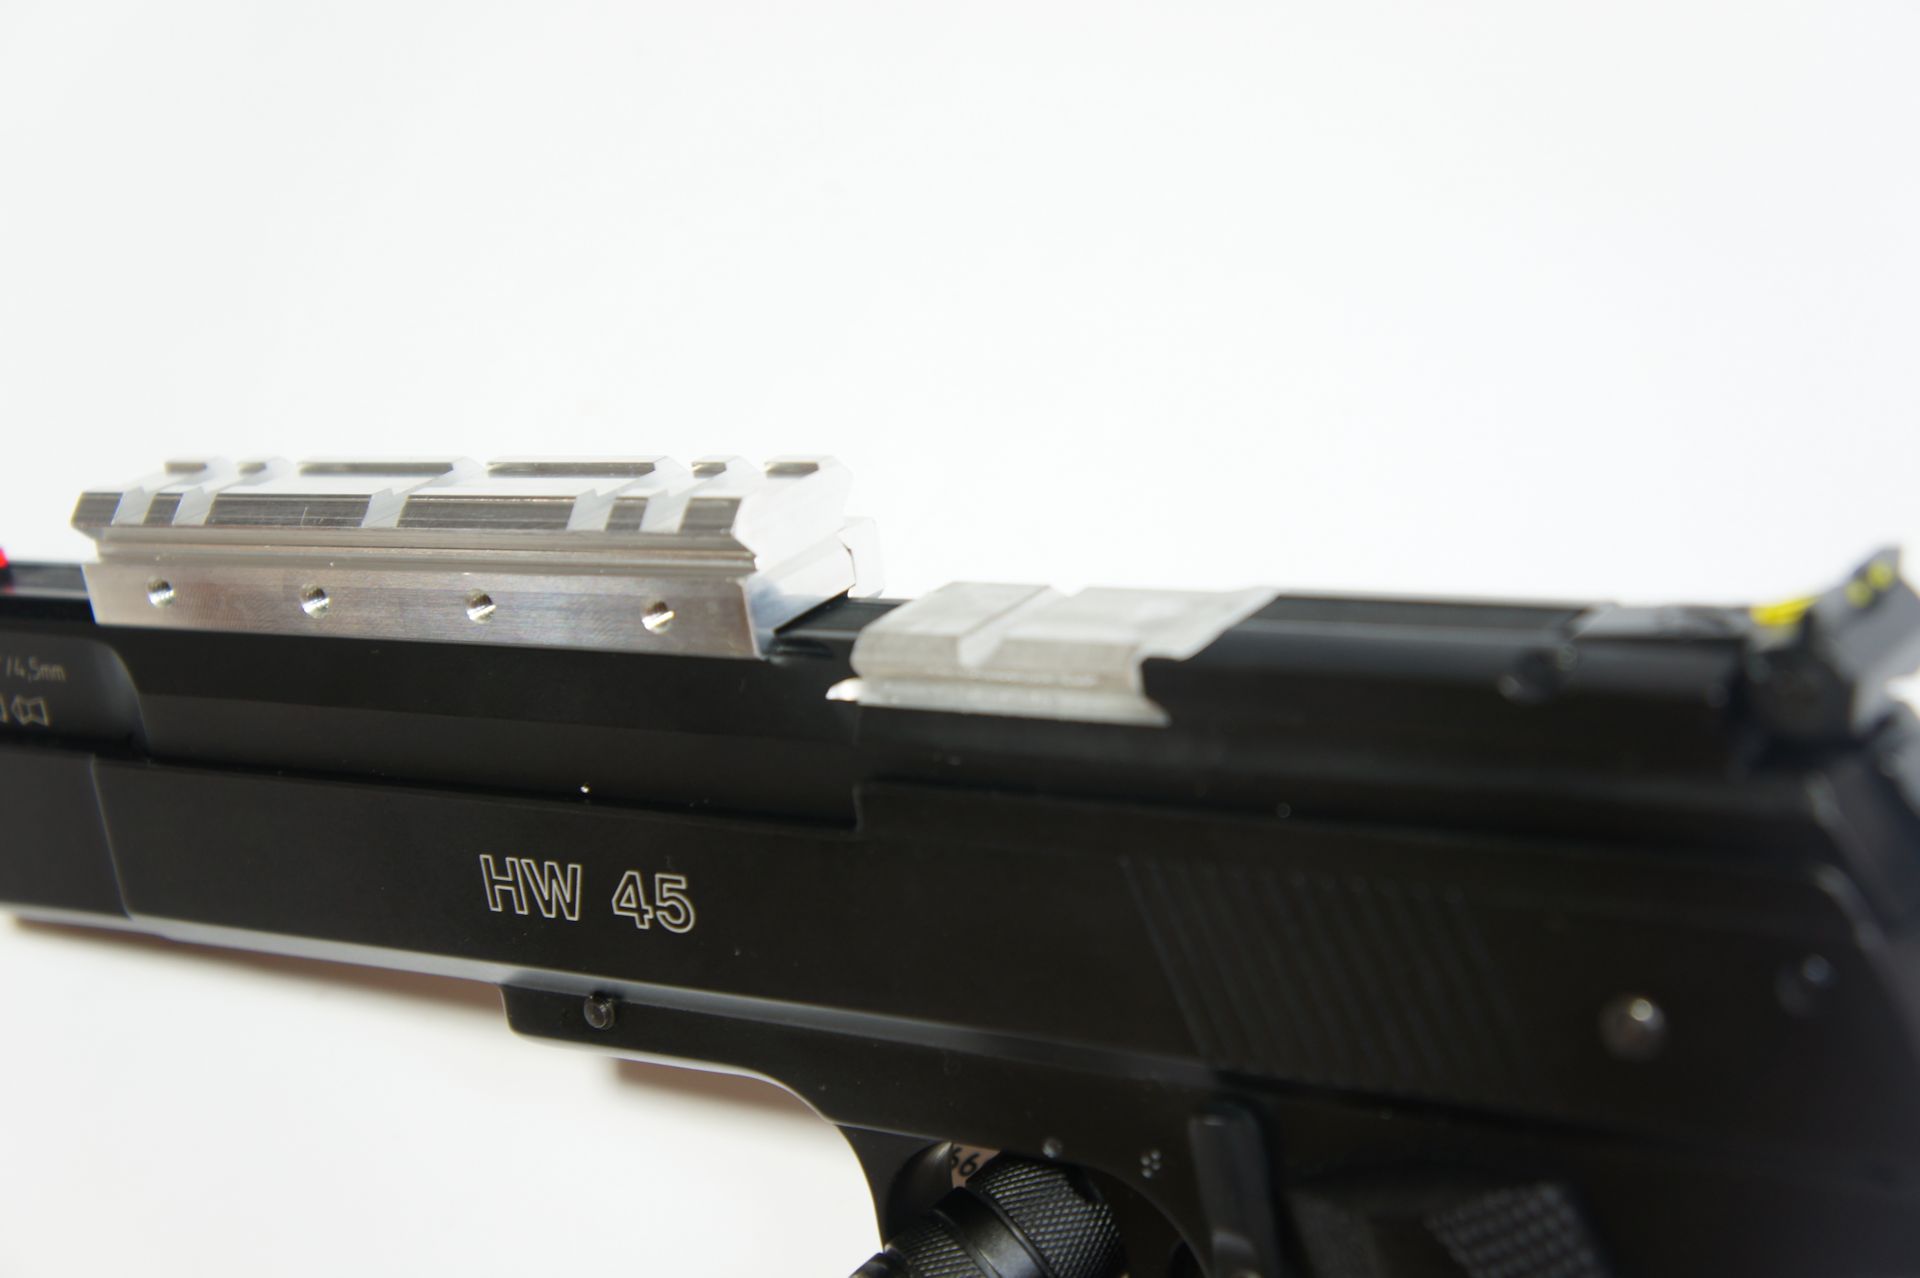 Montagebeispiel einer speziellen Montageschiene für die Luftpistole HW 45. Damit könnten auch an Standardwaffen Optiken befestigt werden. Im Bildmittelpunkt ist hier gut (hell) zu sehen, wo die Optik an den neuen Modellen direkt und ohne Schiene angebracht werden kann. 